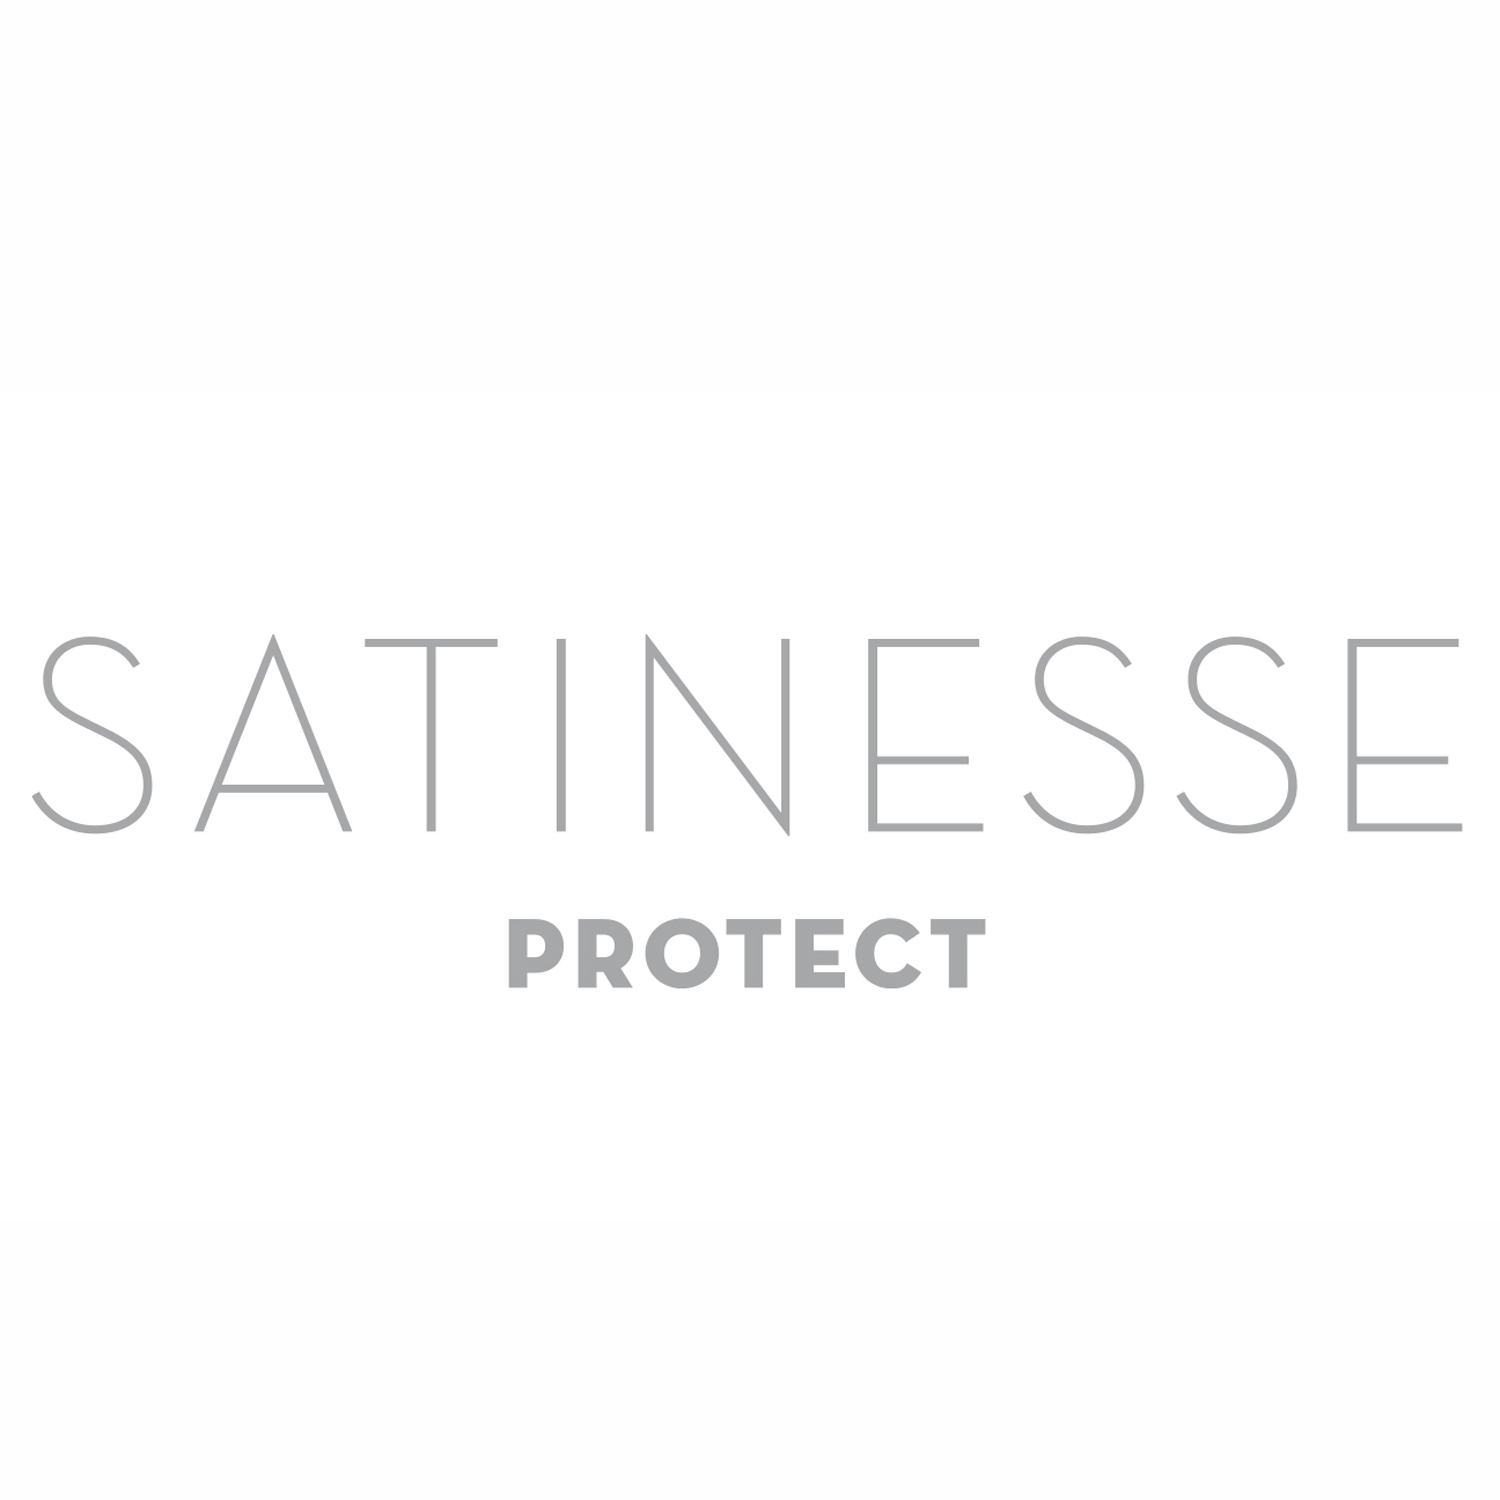 FORMESSE Matratzenschoner Satinesse Protect weiß 160x220cm